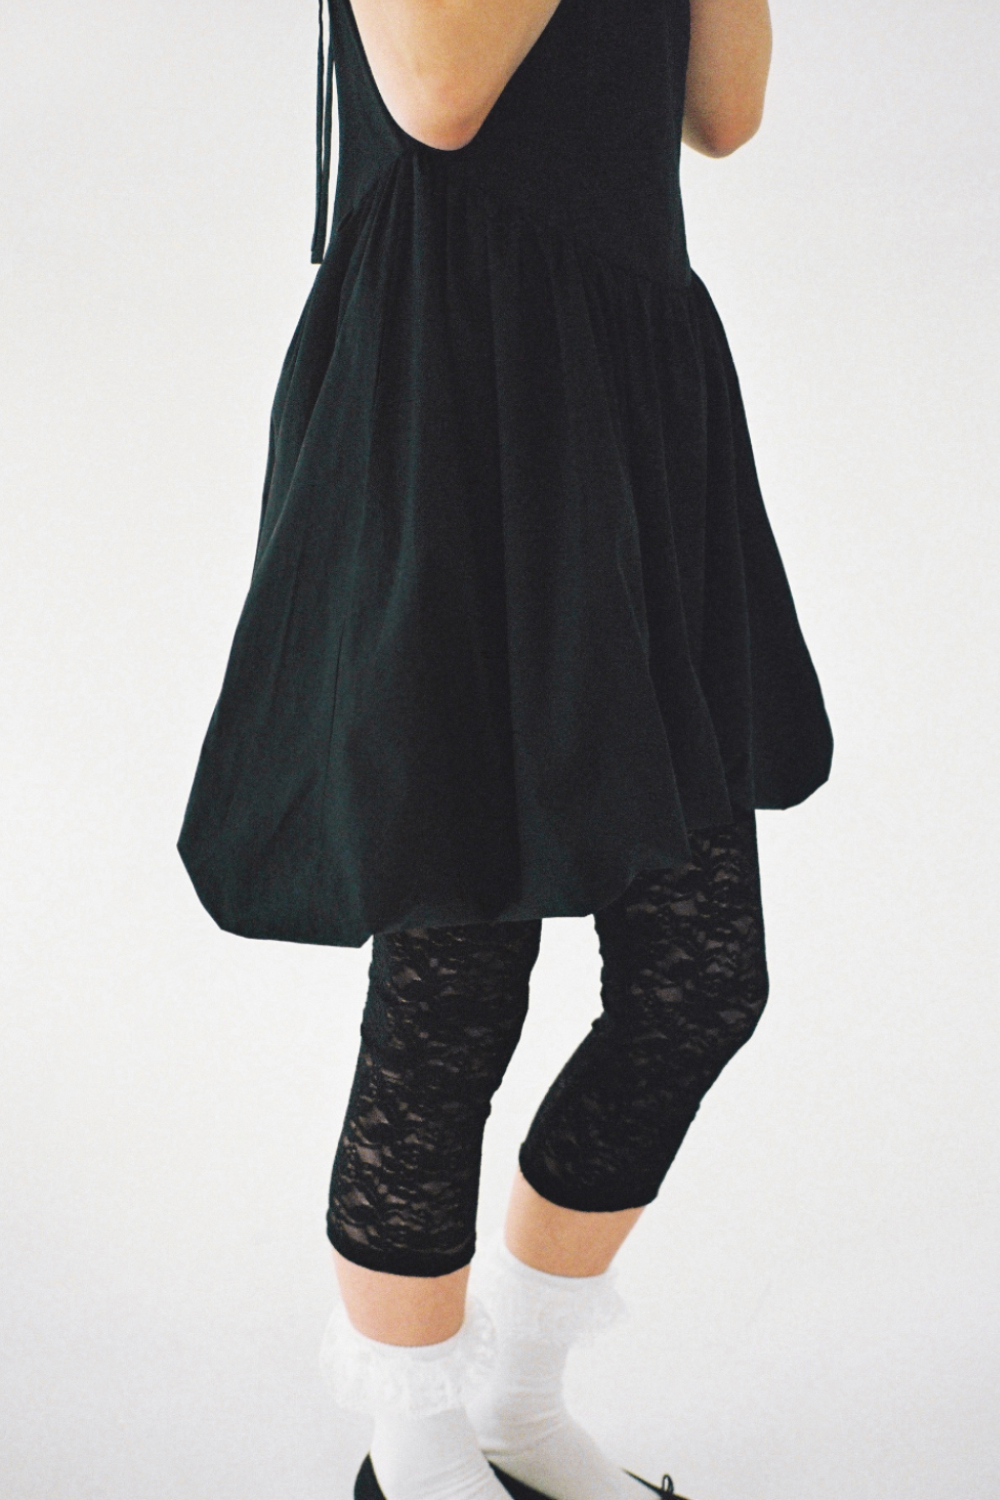 Carry lace leggings (Black)